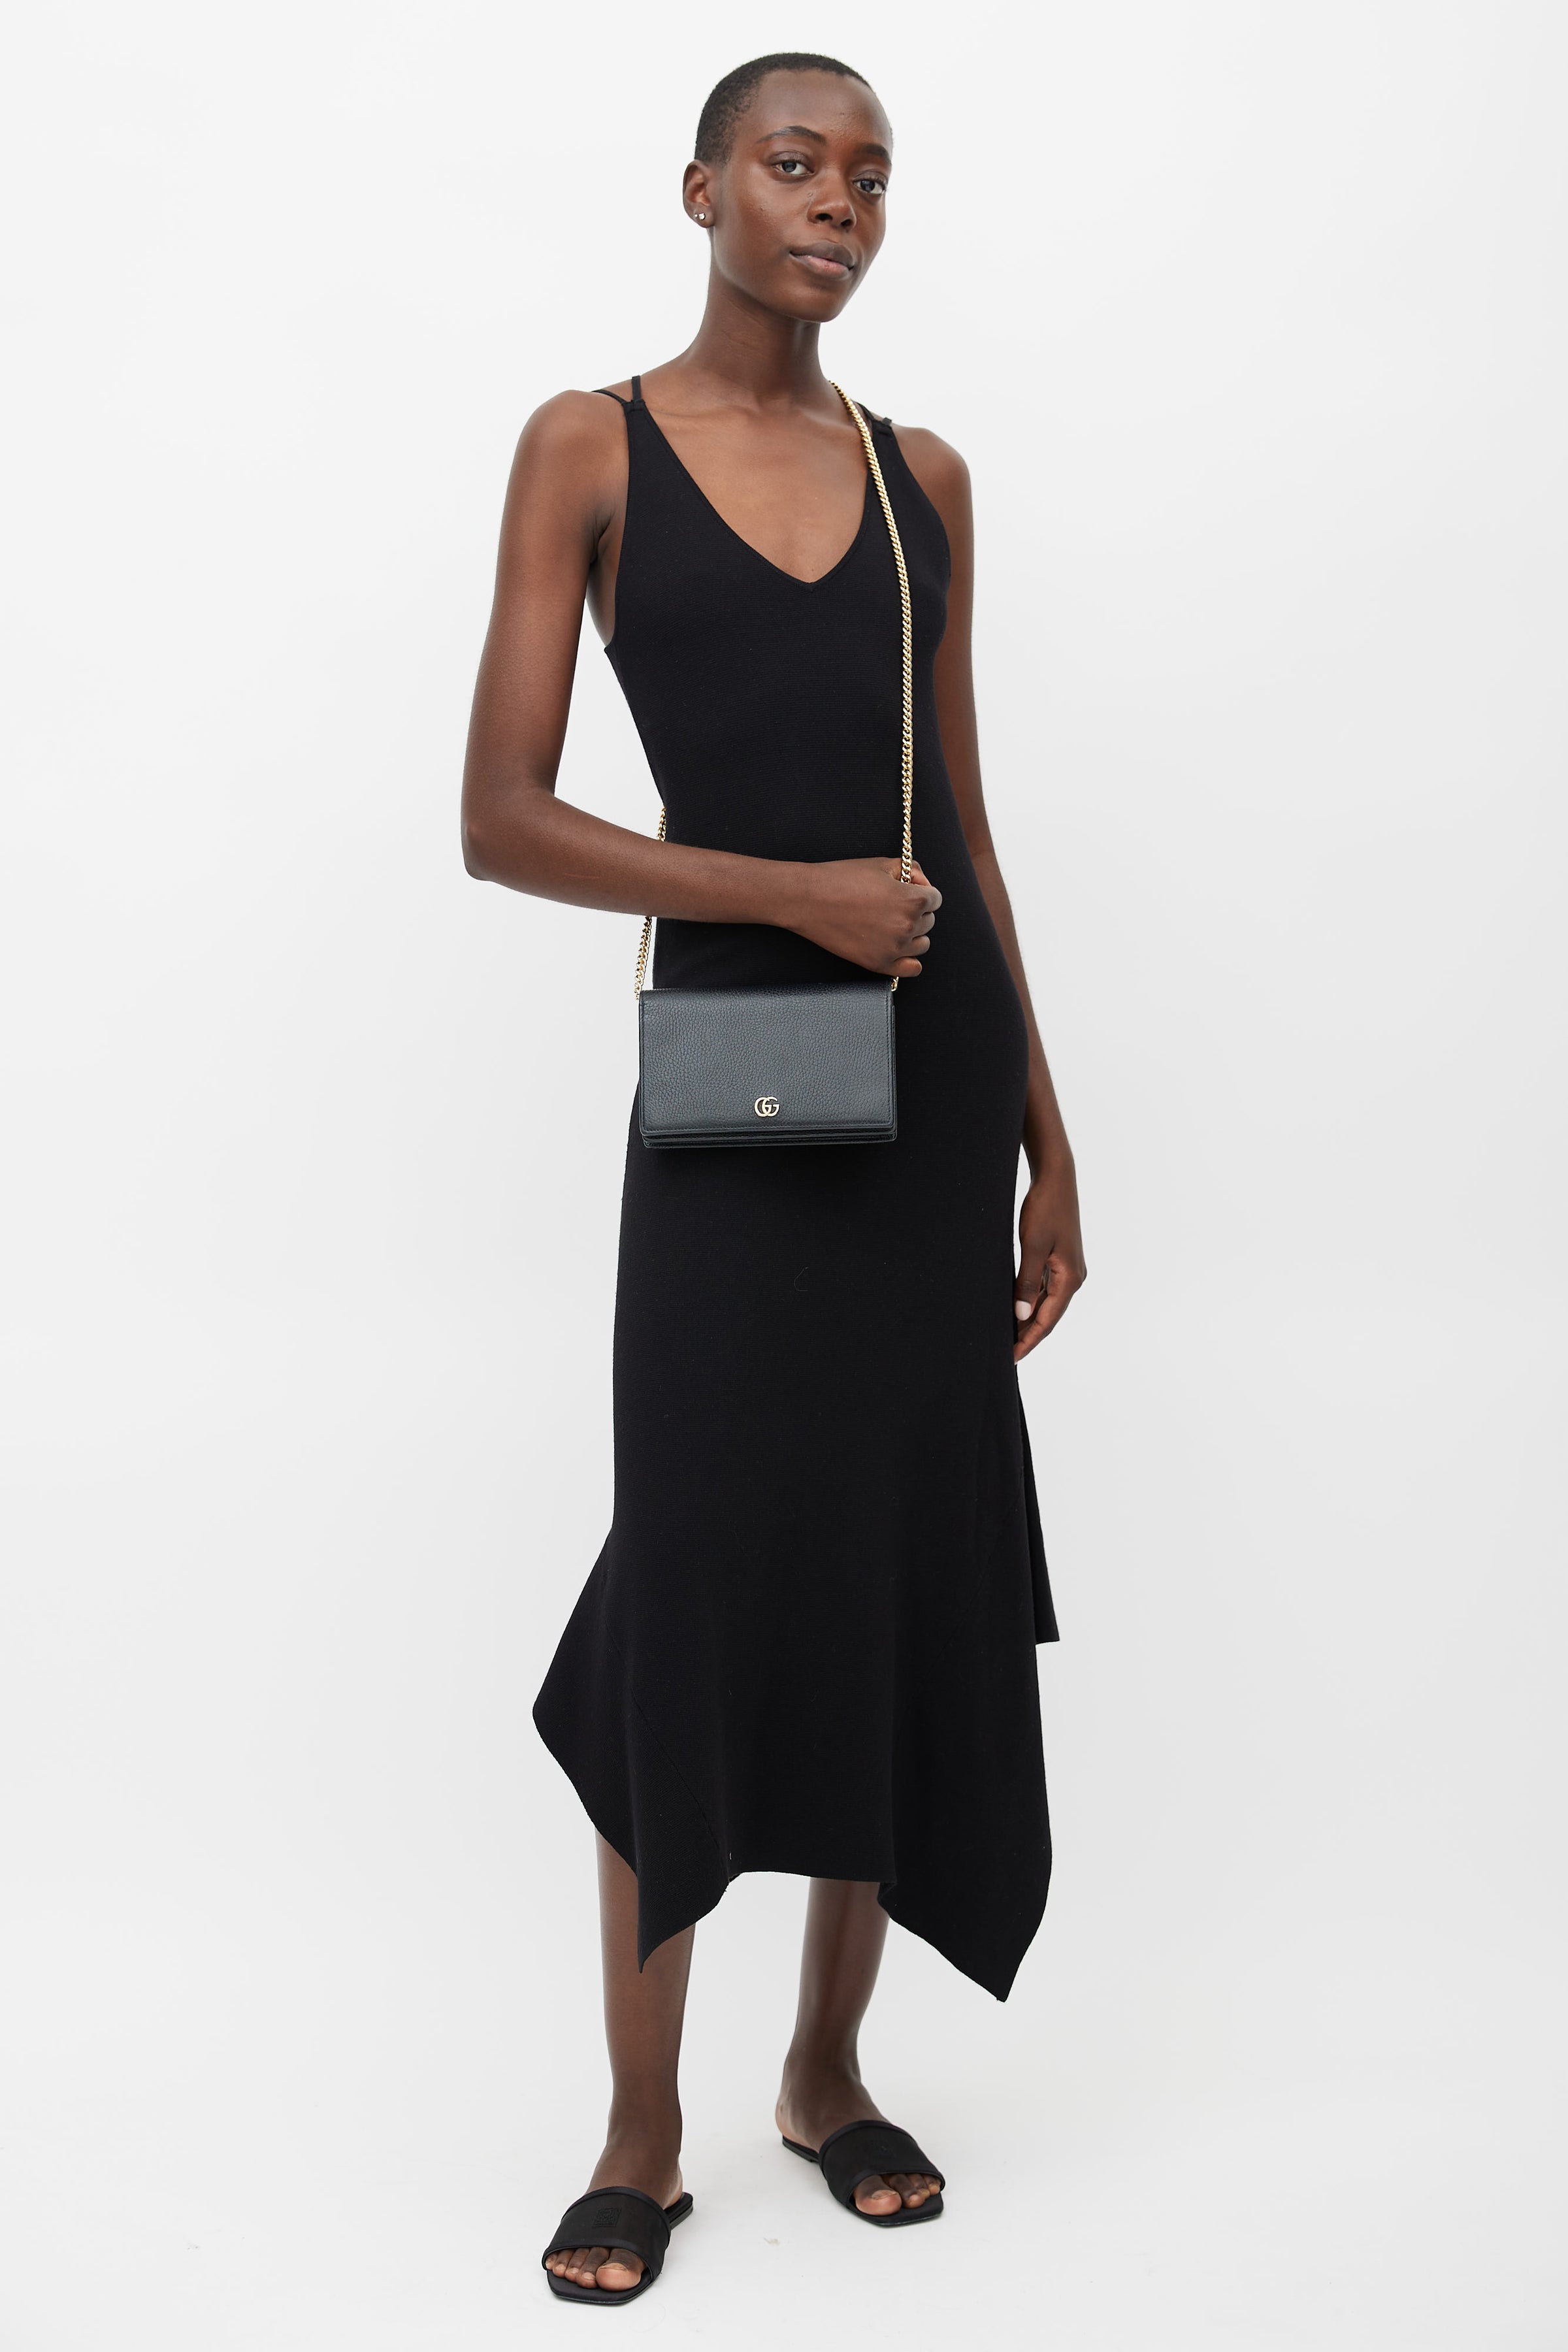 Gucci // Black GG Marmont Mini Chain Bag – VSP Consignment